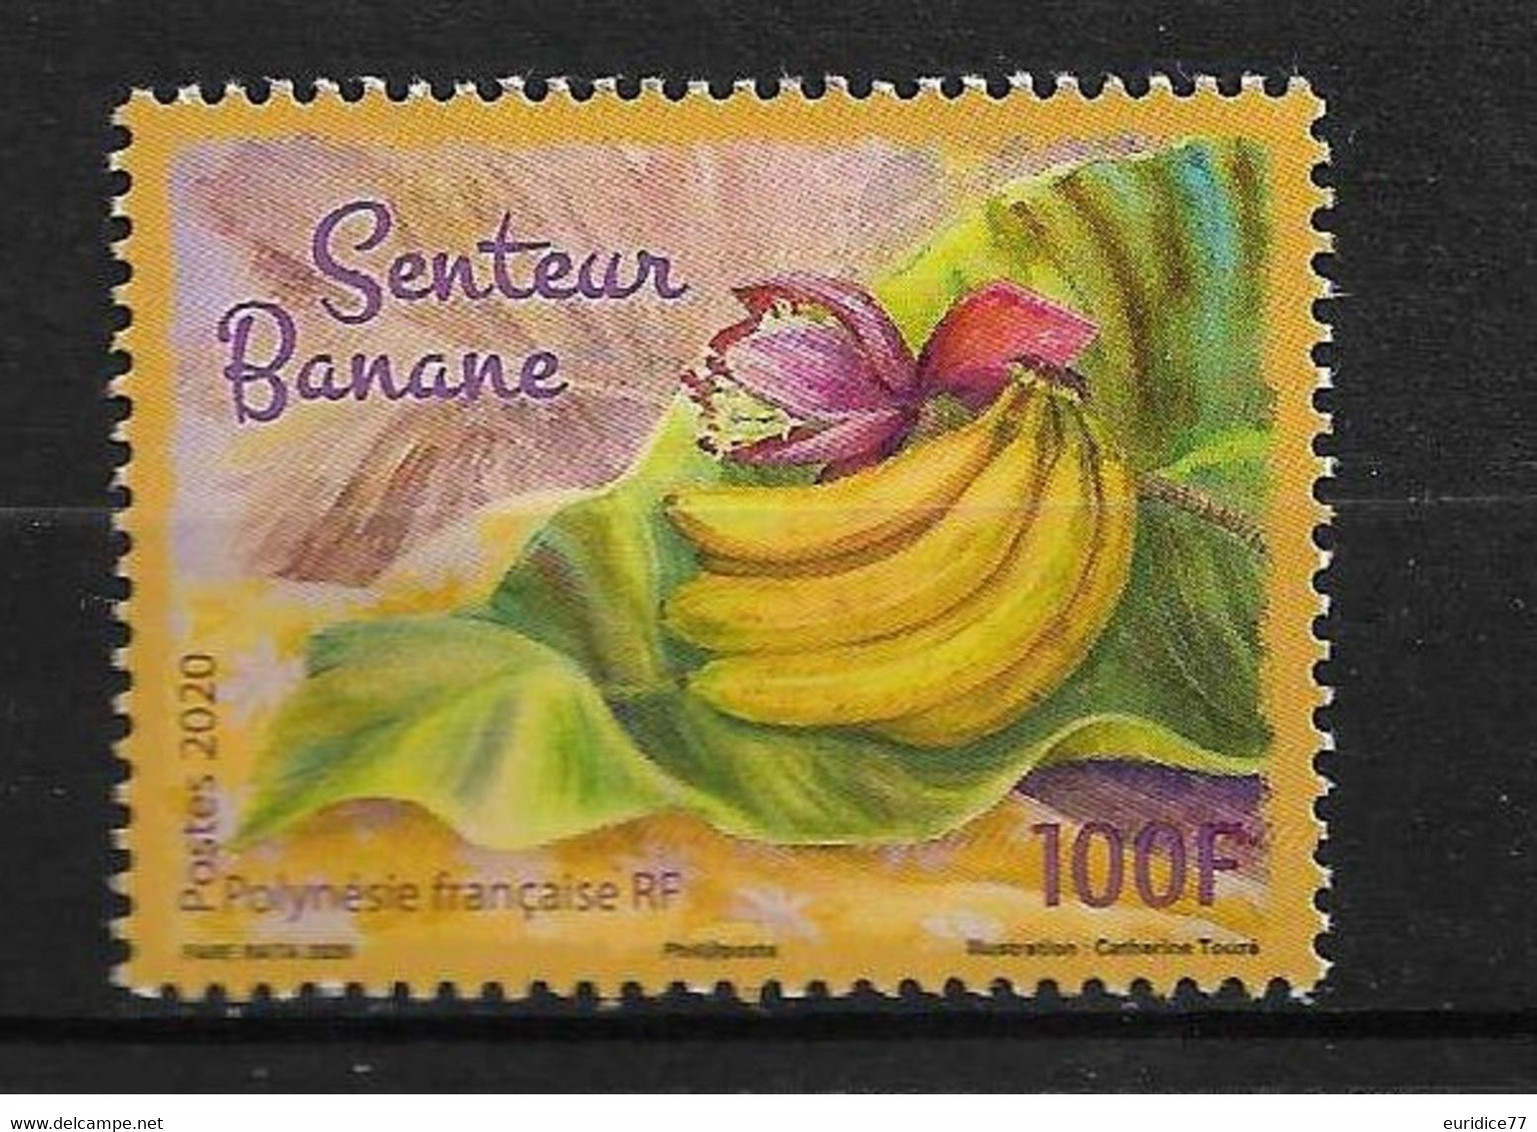 French Polynesie 2020 - Senteur Banane Mnh** - Ungebraucht